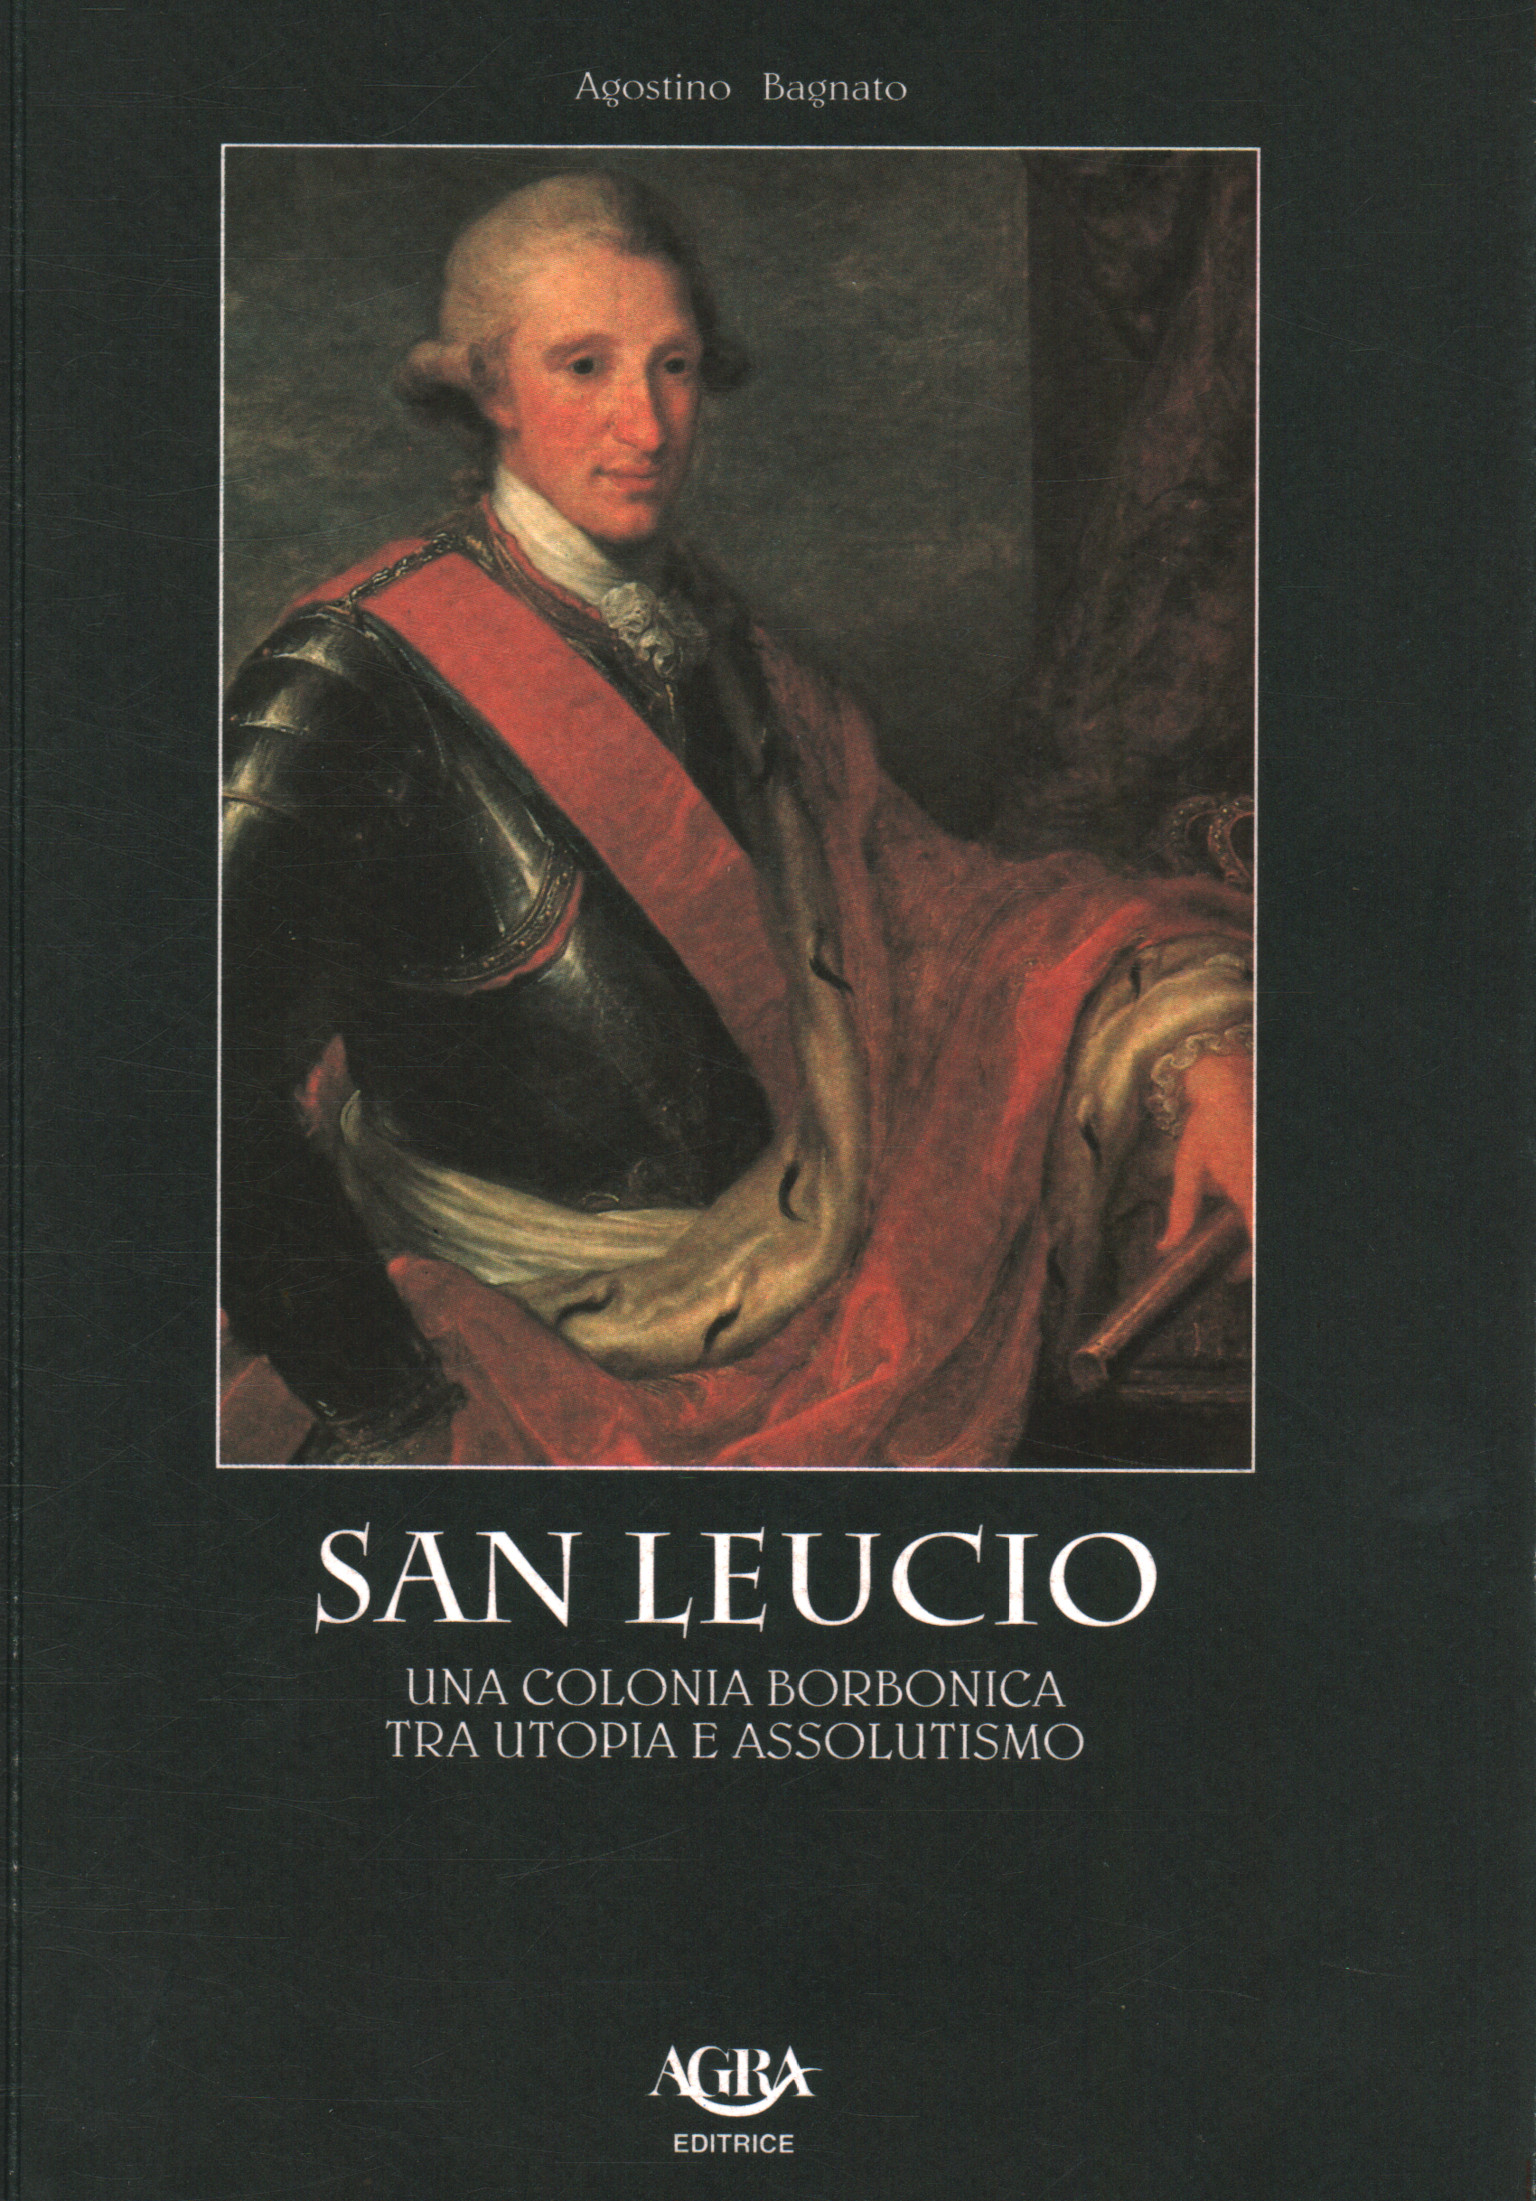 San Leucio. A Bourbon colony between